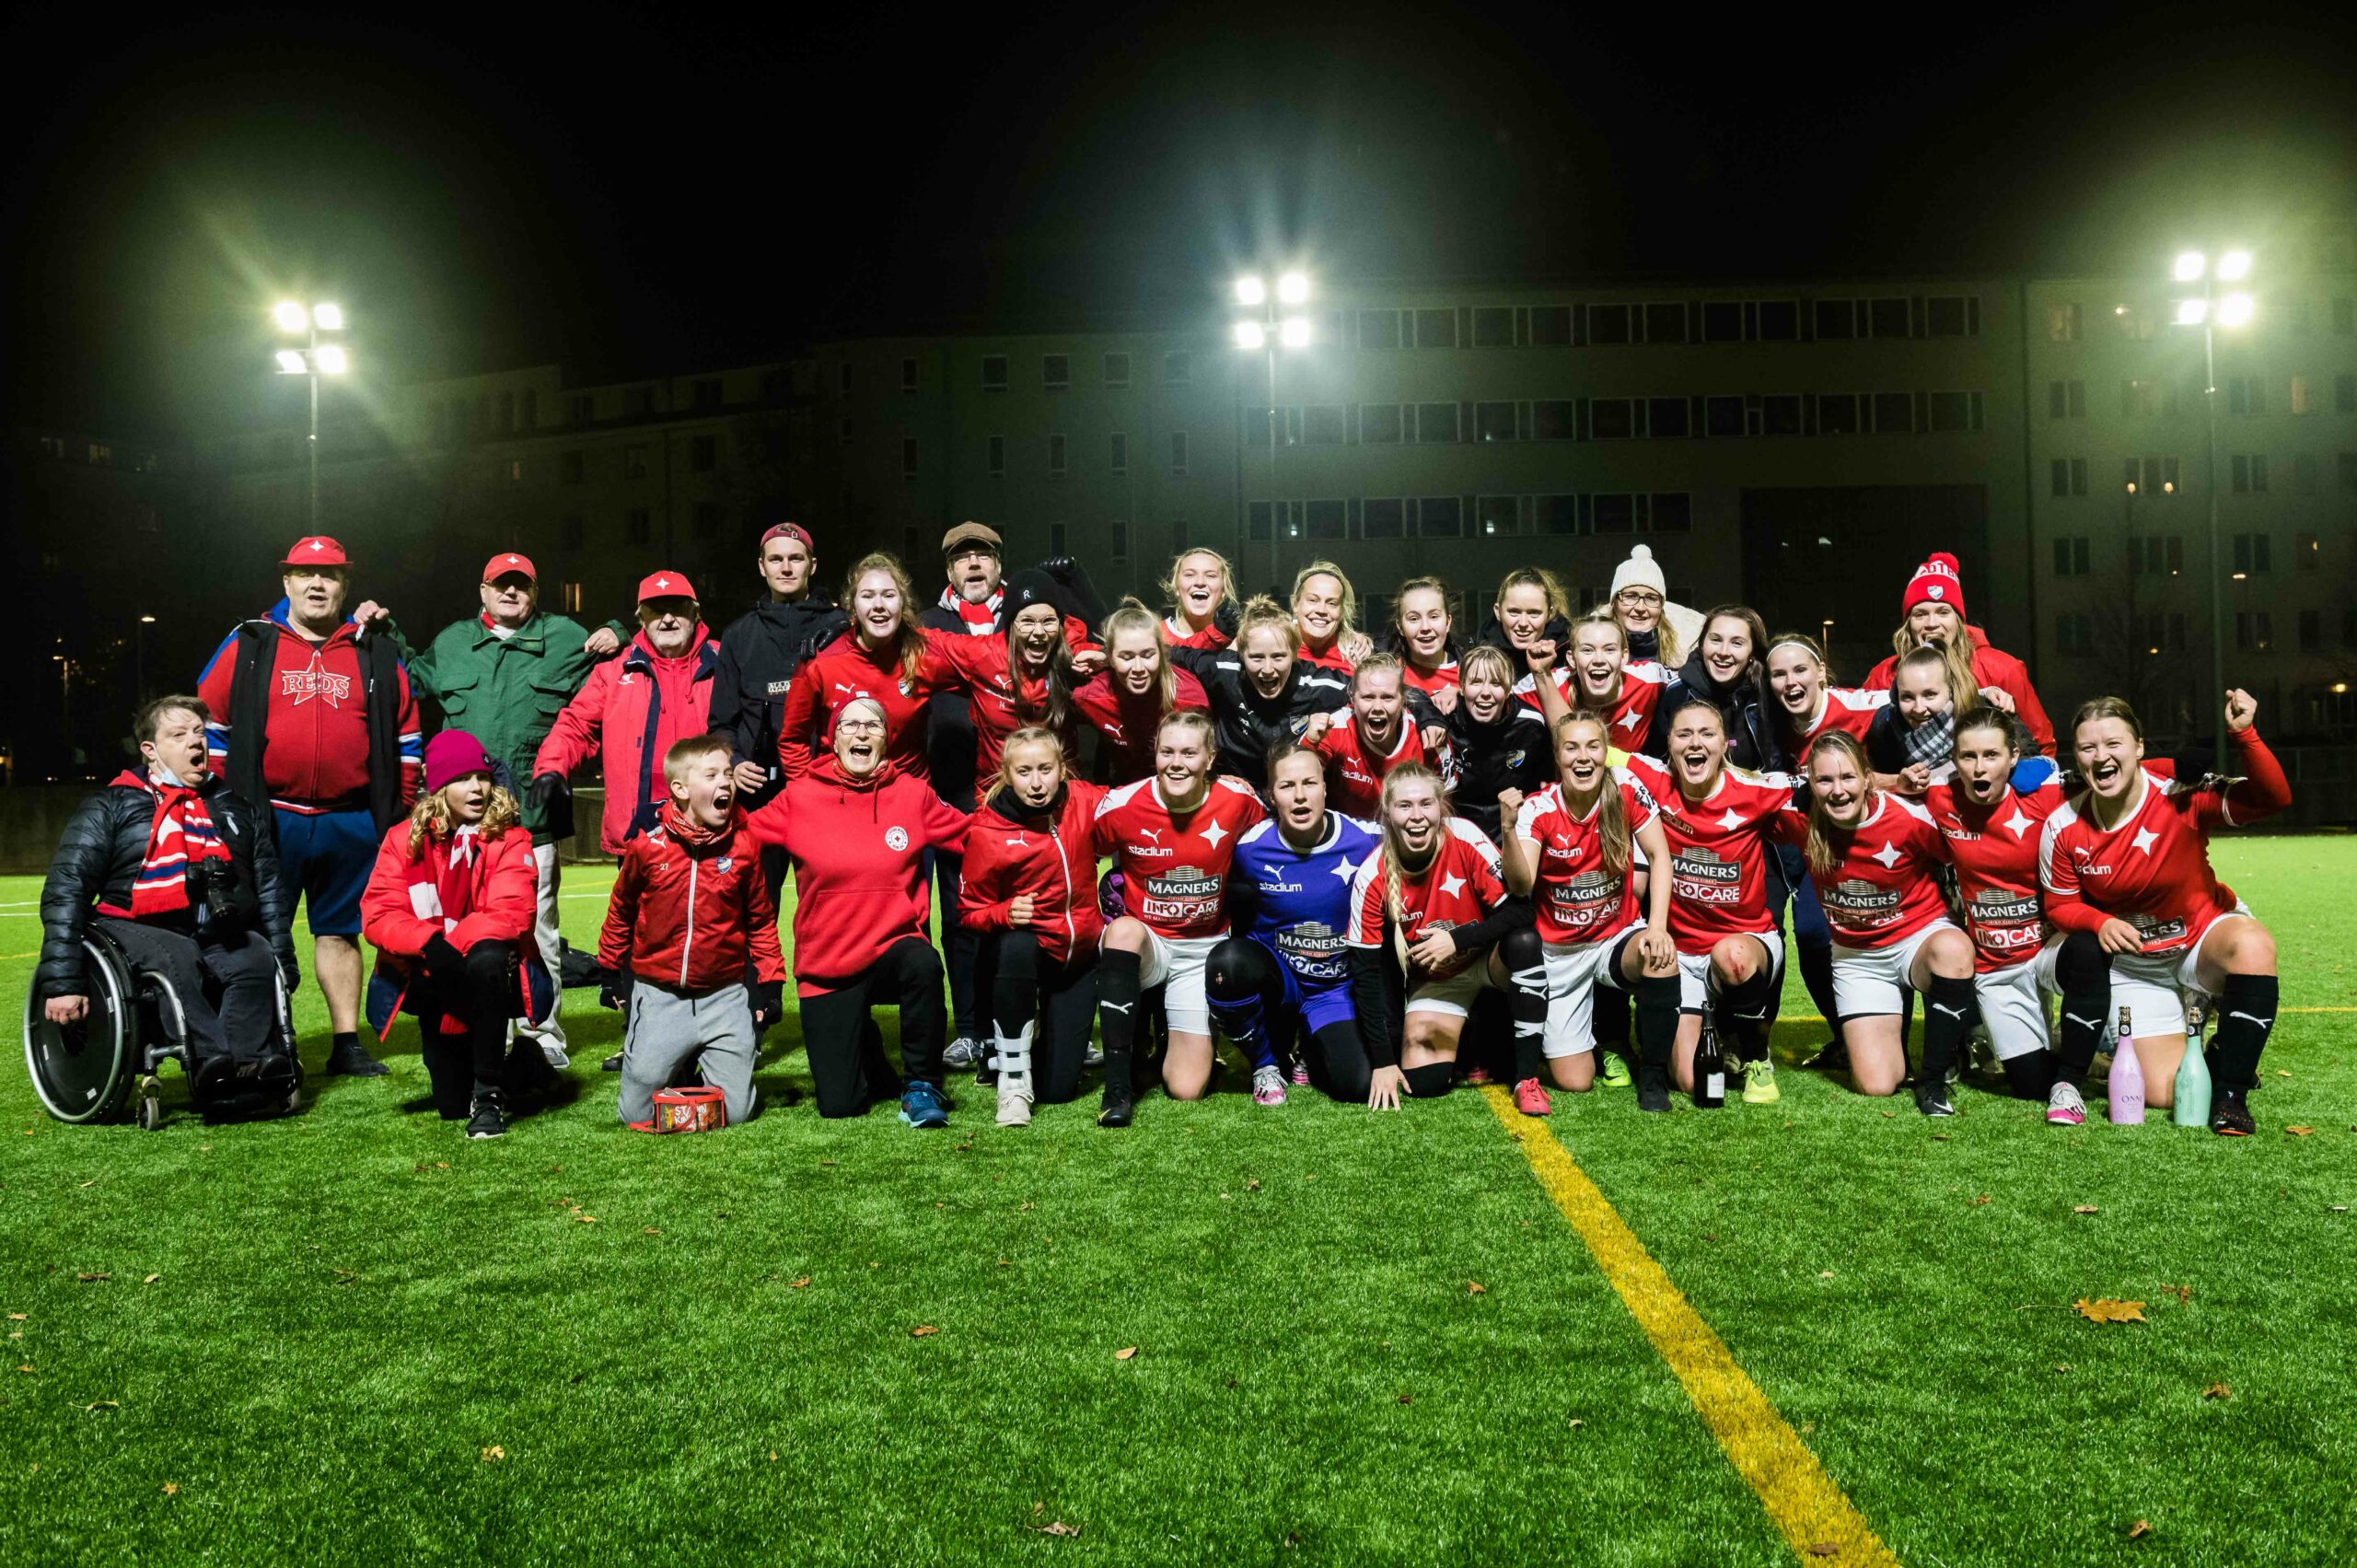 Naiset varmistivat nousunsa Kakkoseen – Kauden viimeinen ottelu perjantaina Espoossa